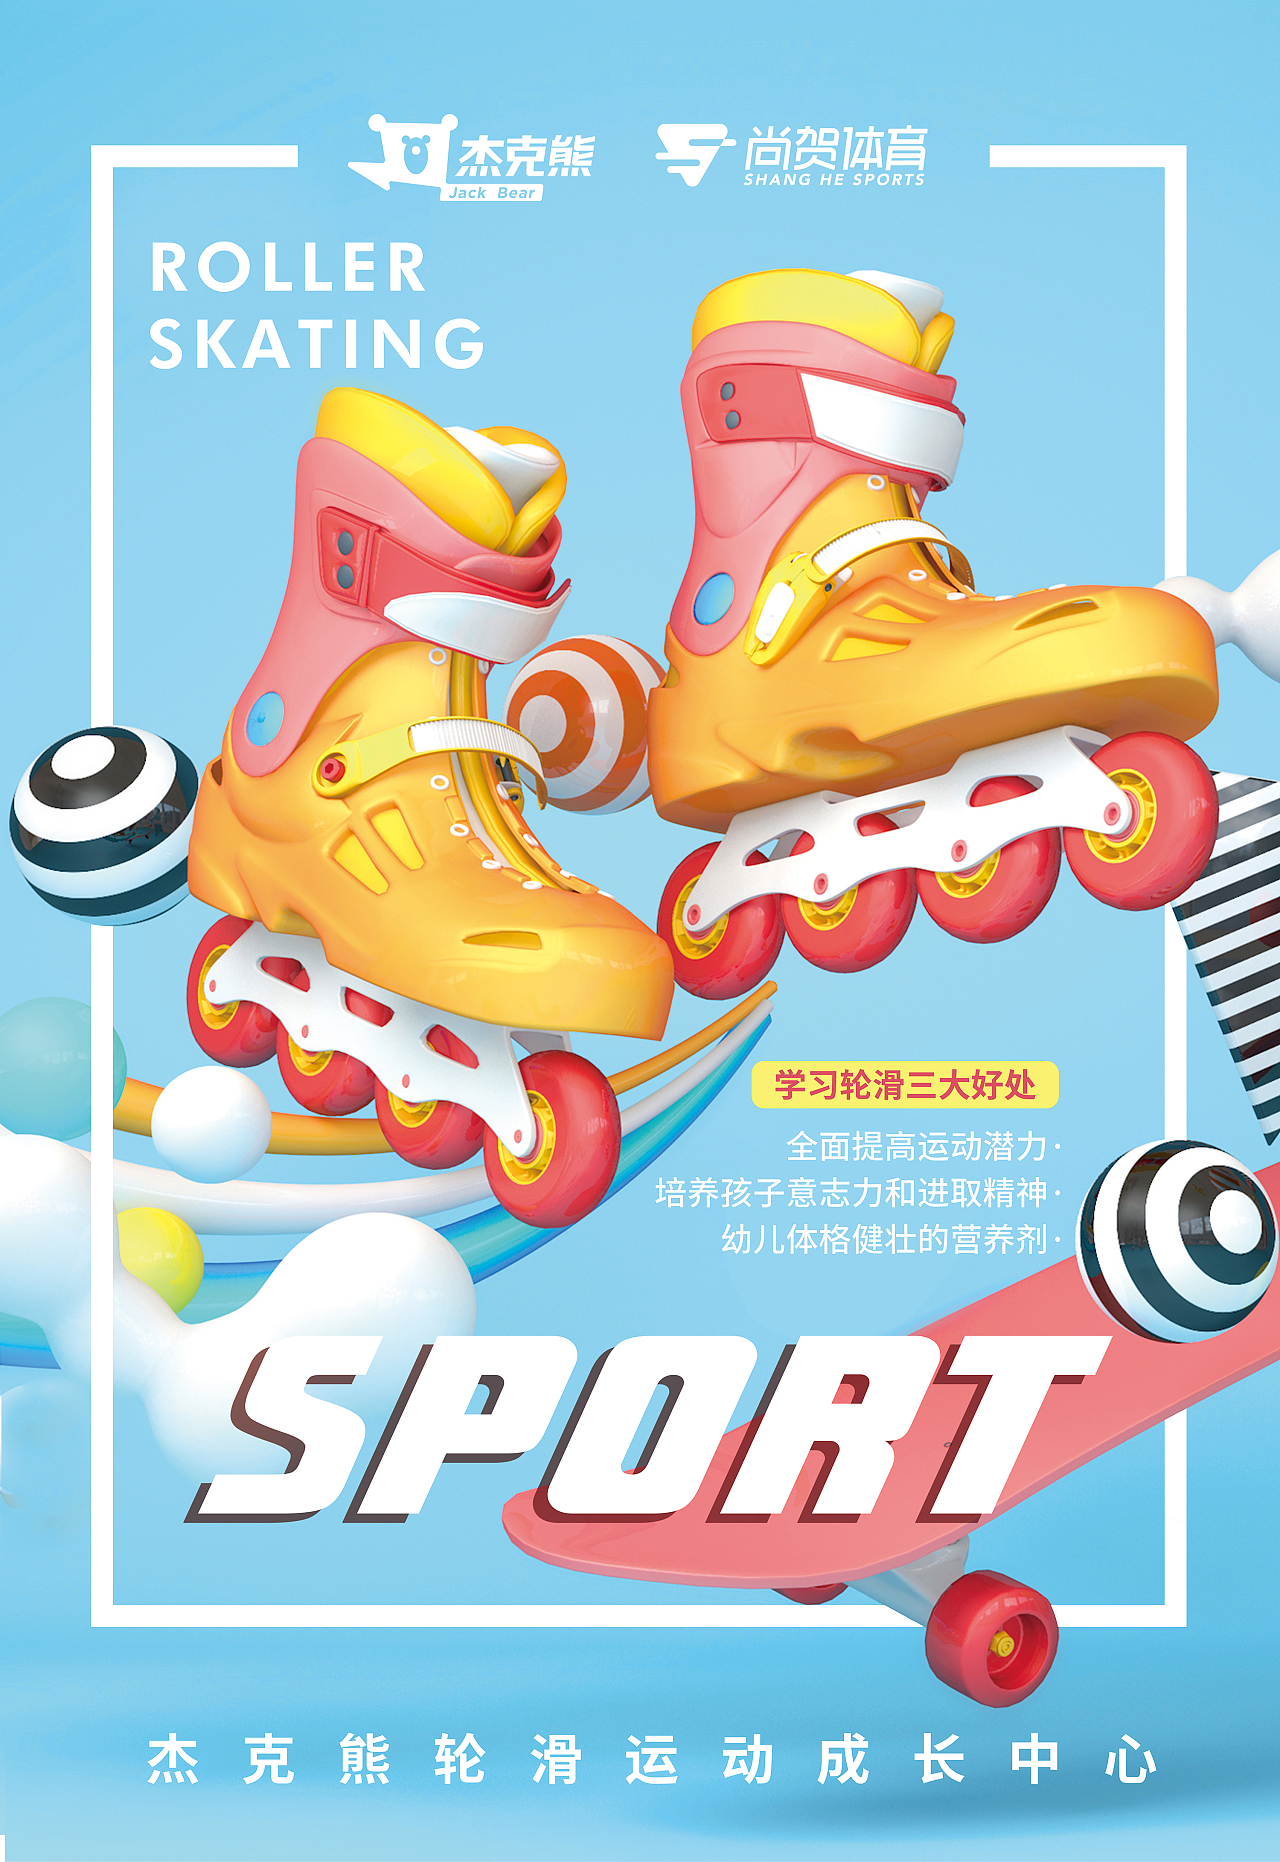 轮滑比赛海报图片-轮滑比赛海报设计素材-轮滑比赛海报模板下载-众图网